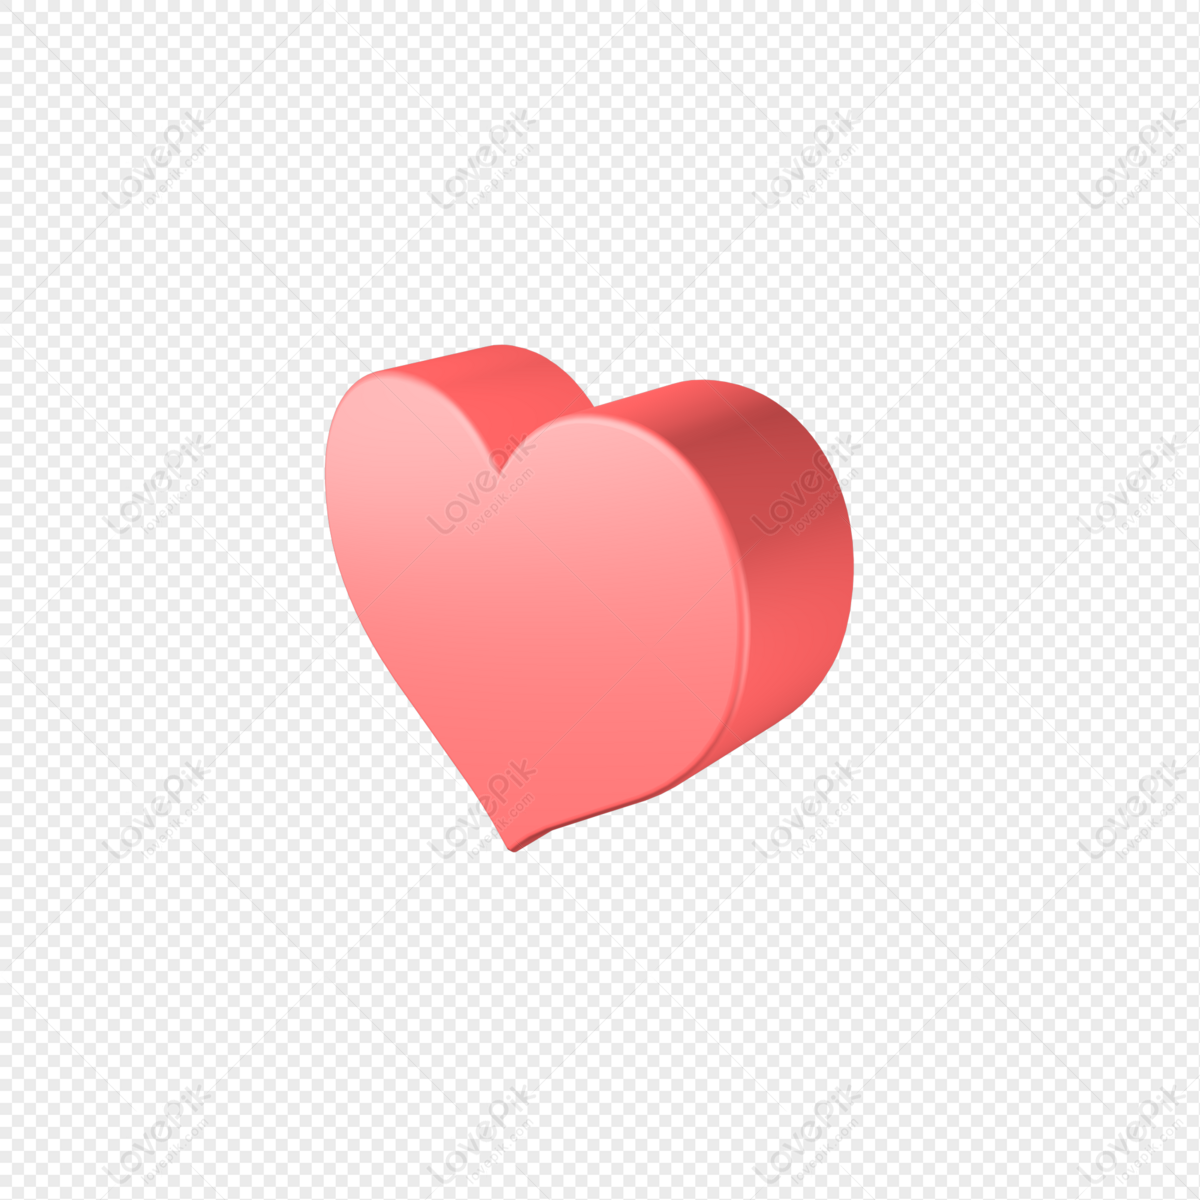 Hãy đón xem ảnh trái tim đỏ ngọt ngào và cảm động này để thưởng thức tình yêu đong đầy. Màu đỏ sẽ khuấy động trái tim bạn, và bạn sẽ được mê hoặc bởi những cảm xúc mãnh liệt mà nó gợi lên. Không bỏ lỡ cơ hội để cảm nhận niềm yêu thương trong trái tim bạn!